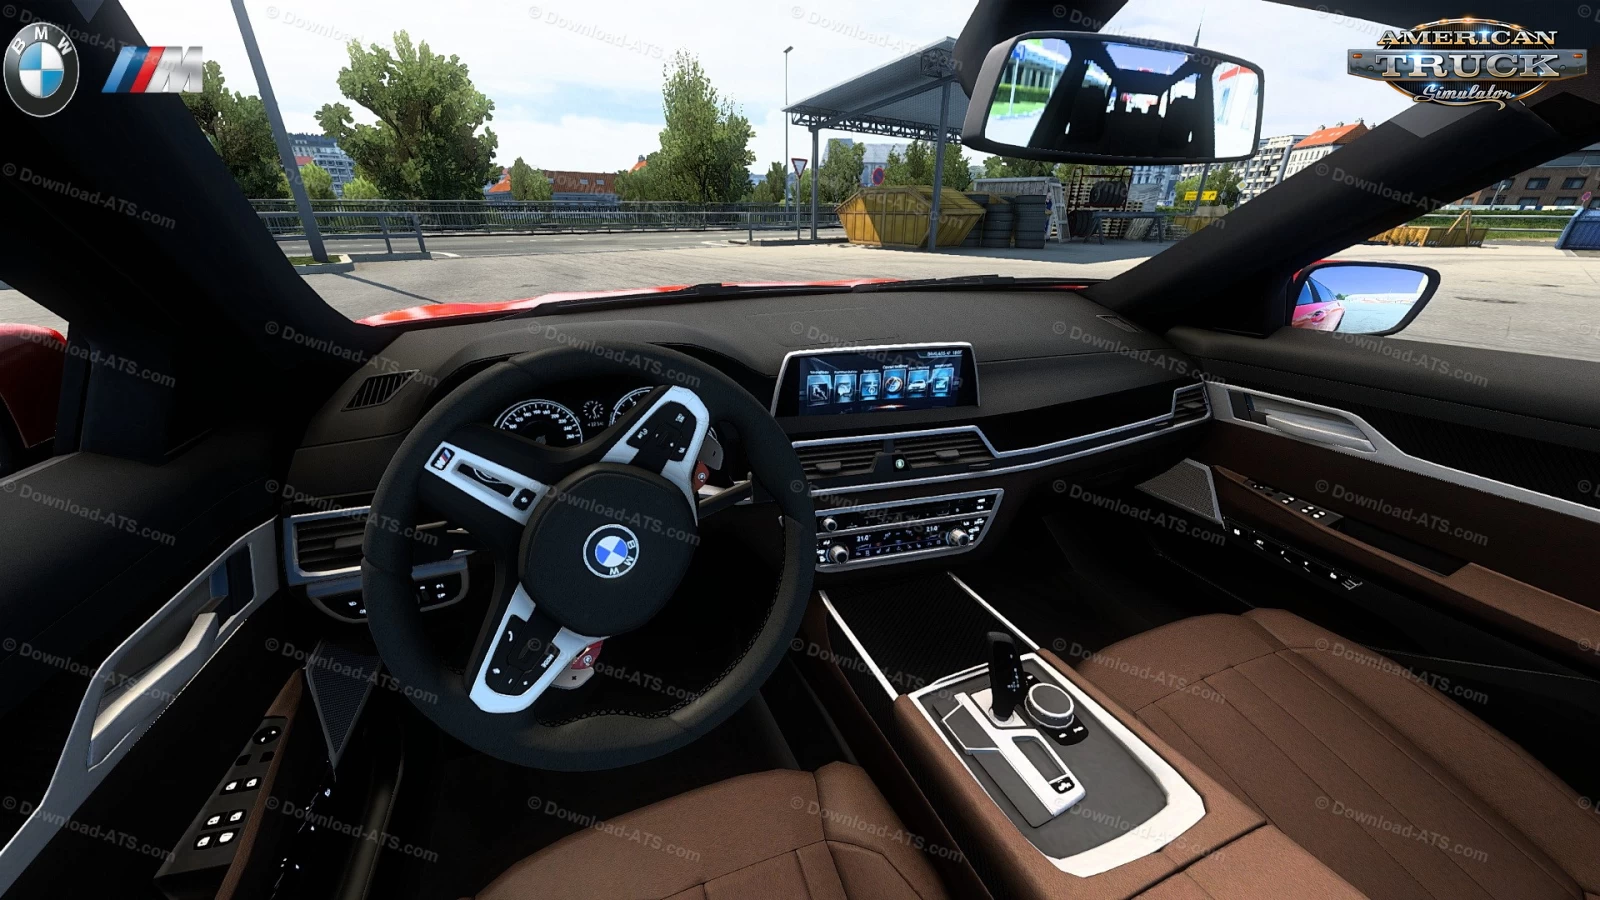 BMW G21 Touring + Interior v1.8 (1.48.x) for ATS